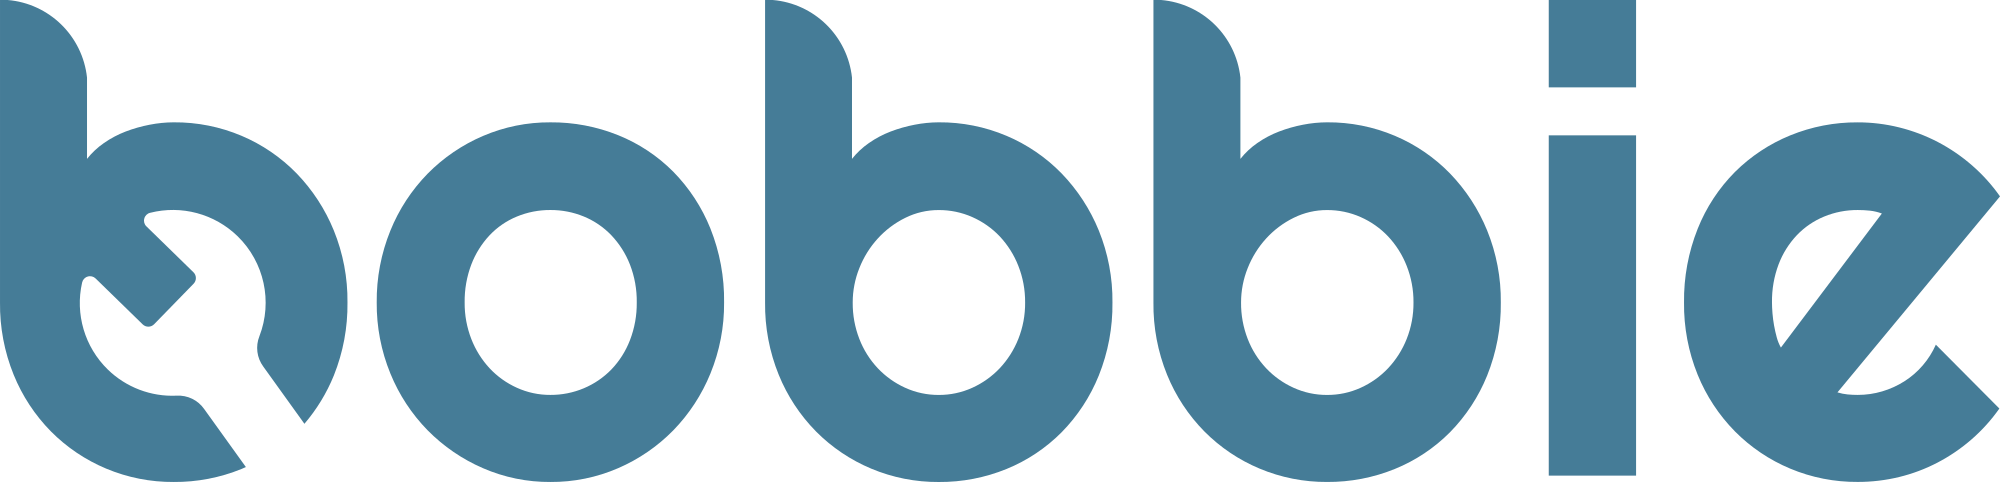 bobbie-logo-2000